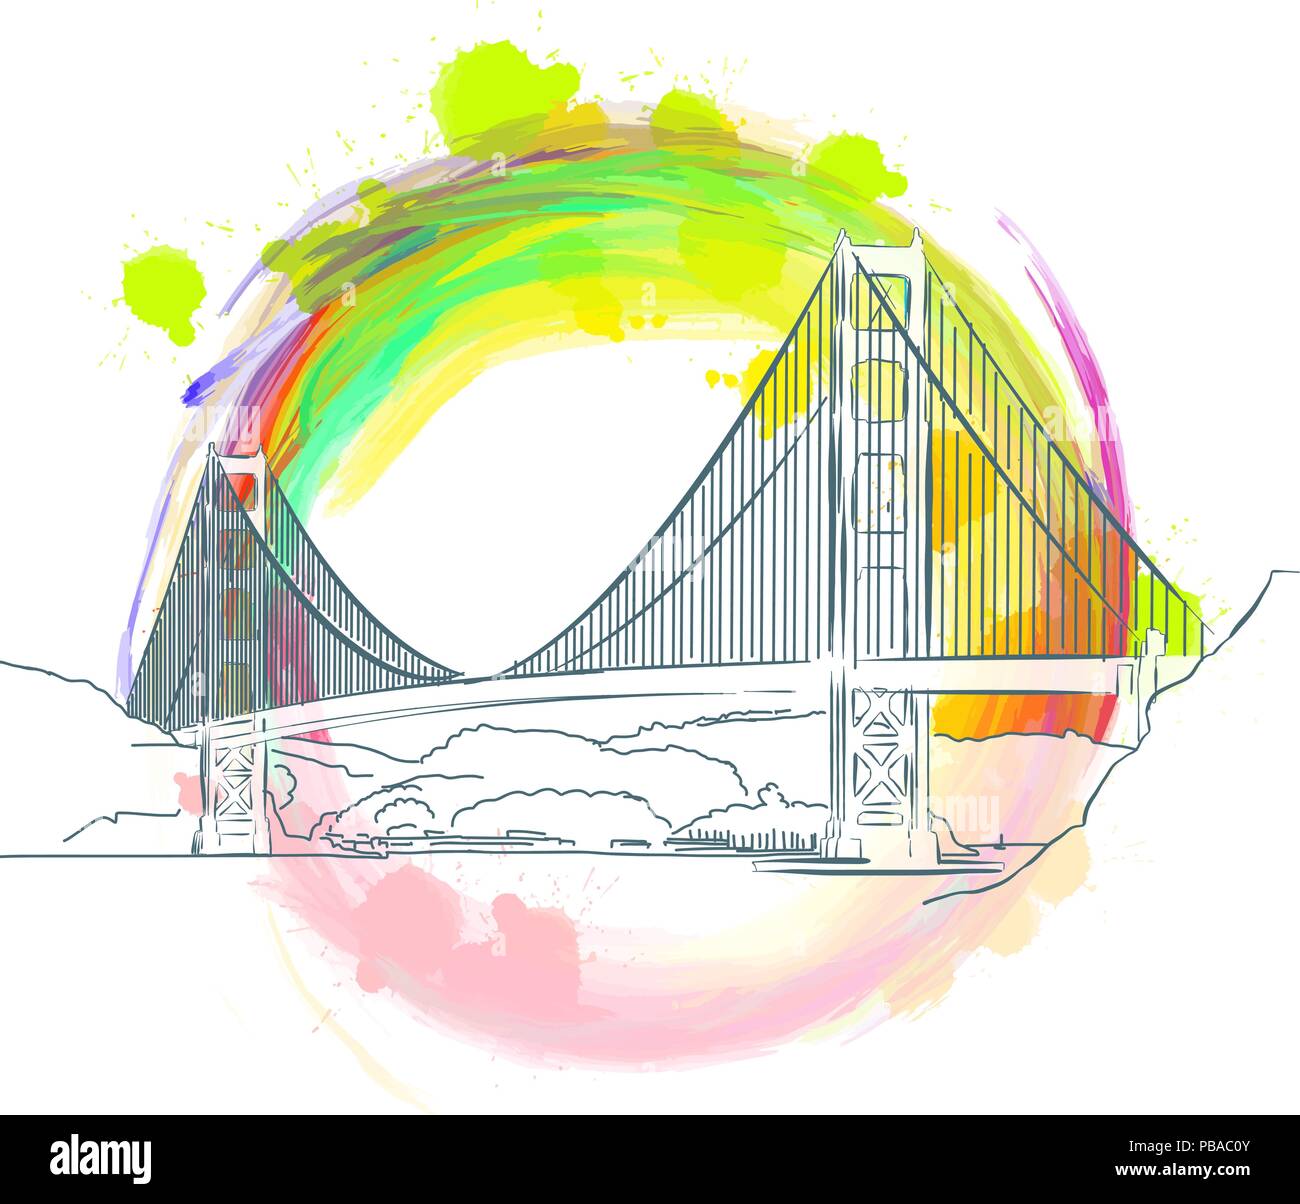 Farbige Wahrzeichen der Golden Gate Bridge in der Nähe von san francisco. Handgezeichneten vektor Skizze. Stock Vektor